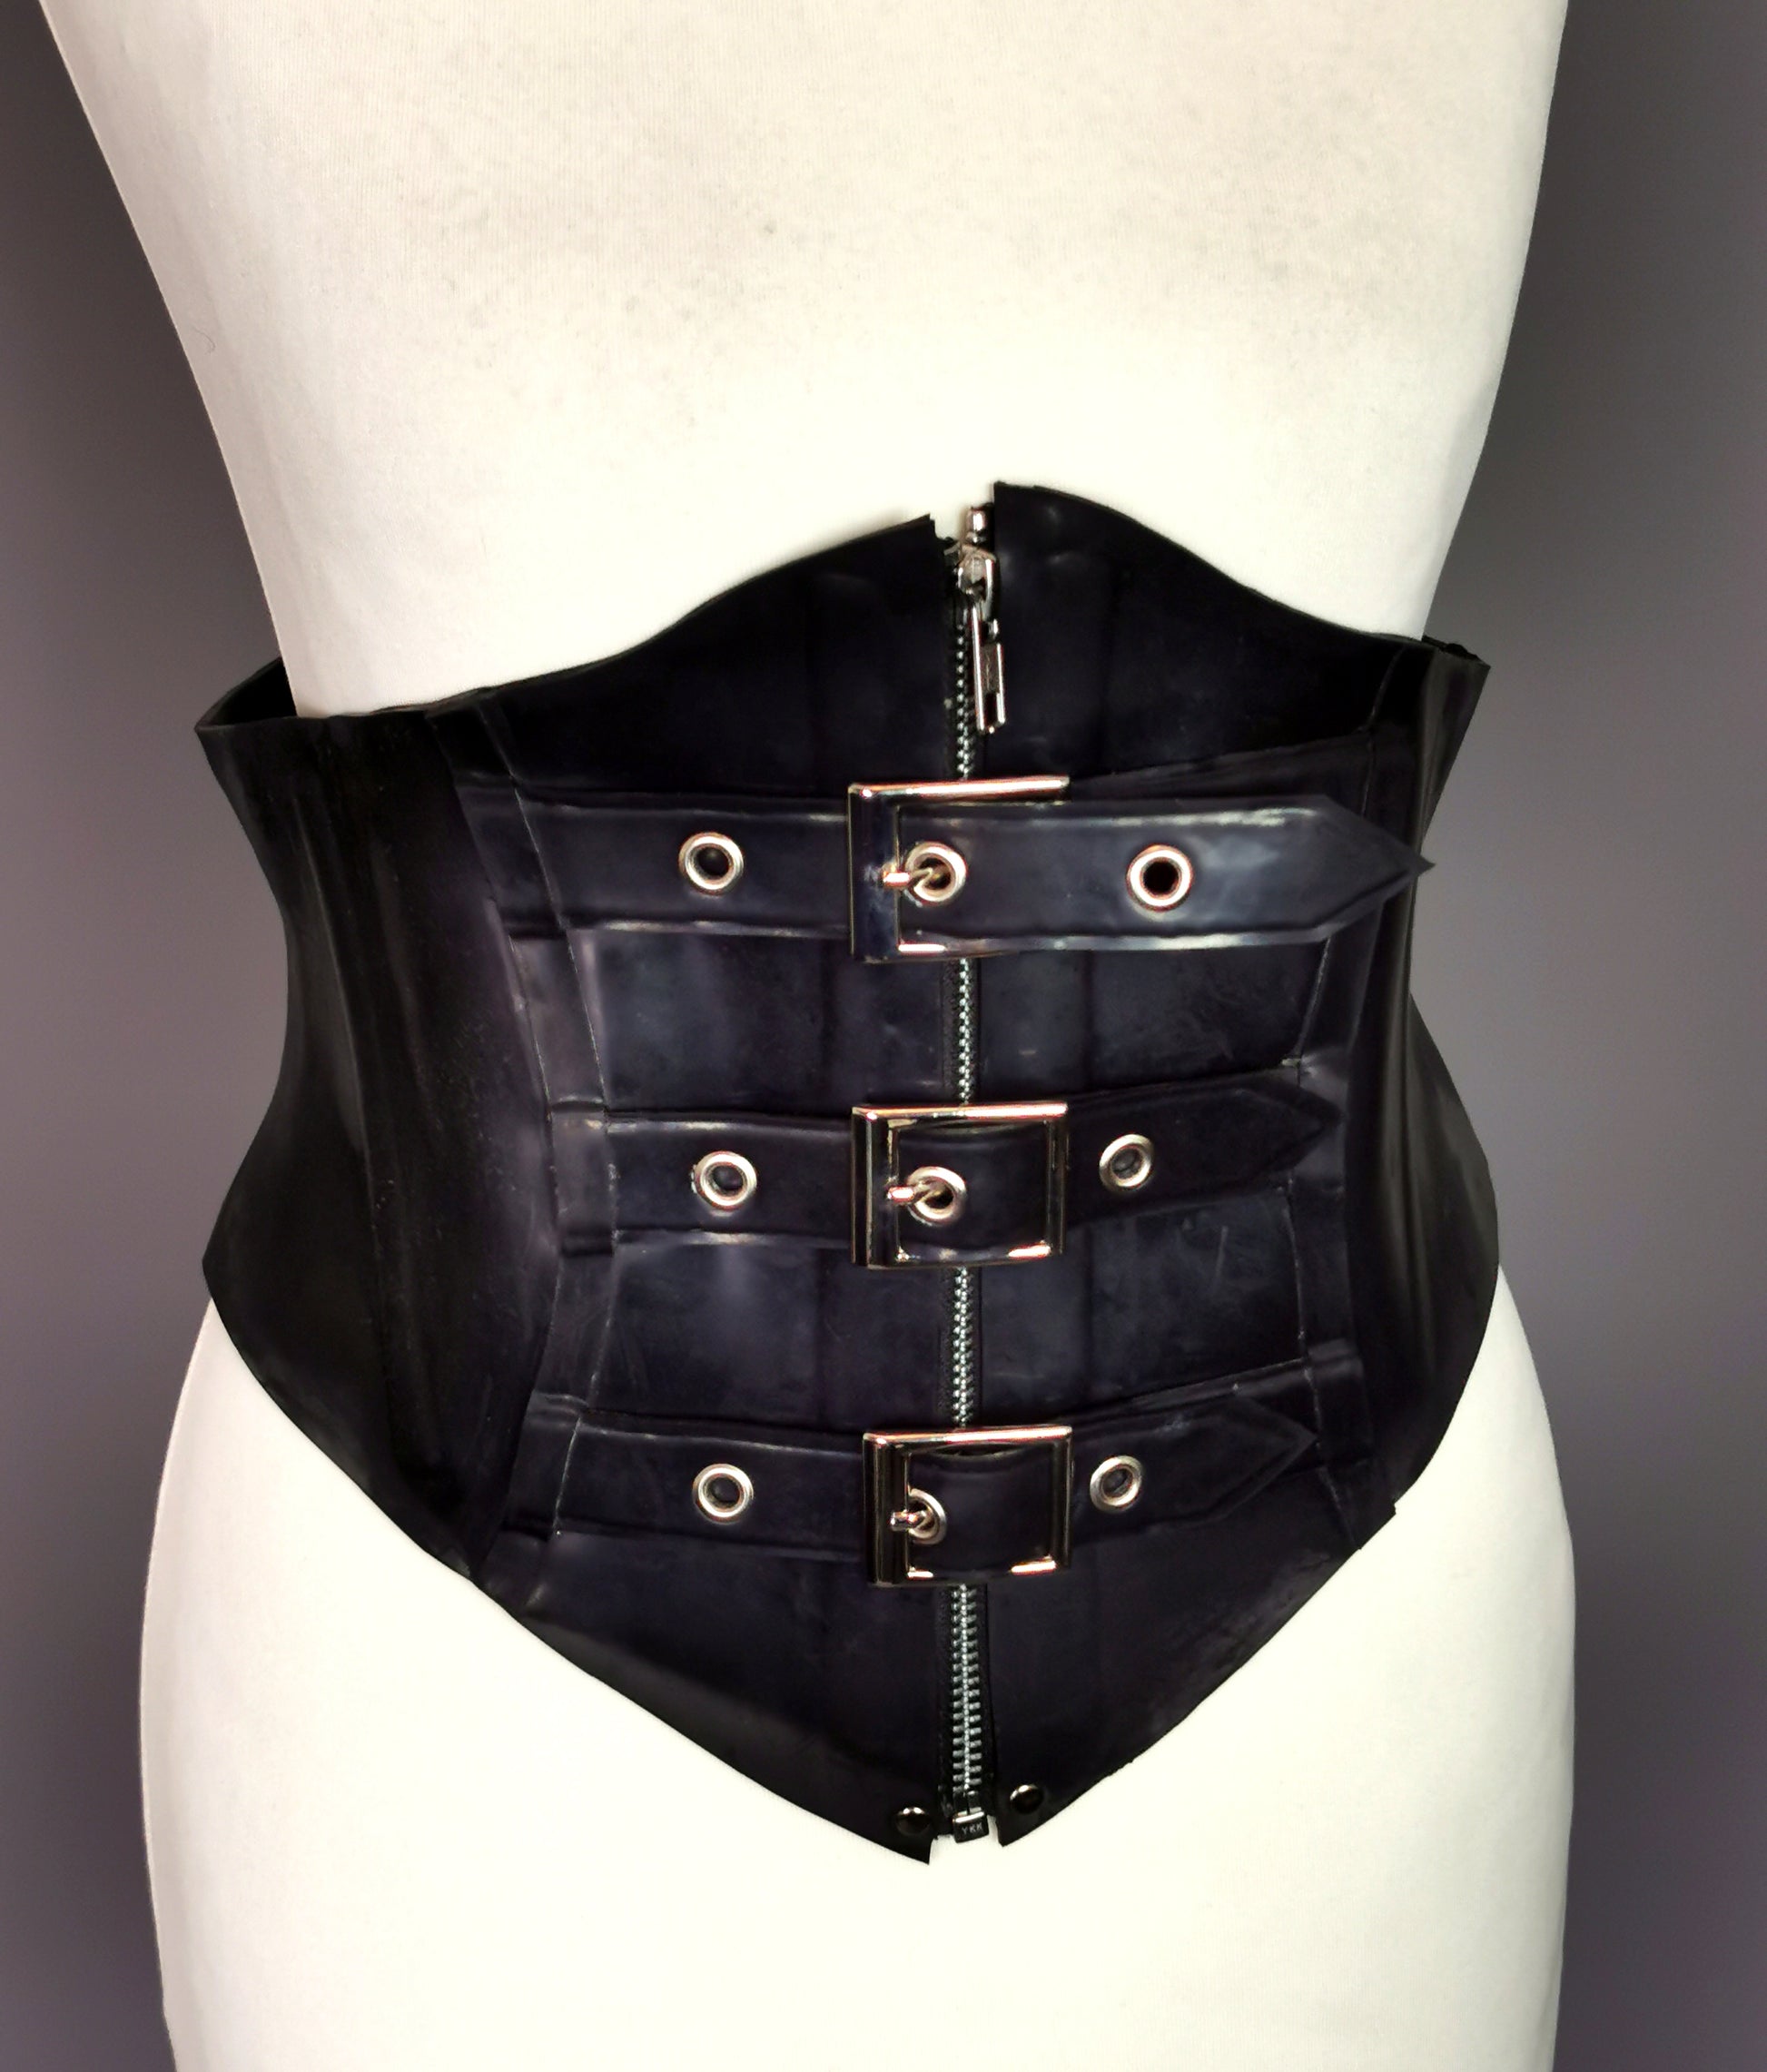 Vintage Latex corset waist cincher belt, Buckles and zip